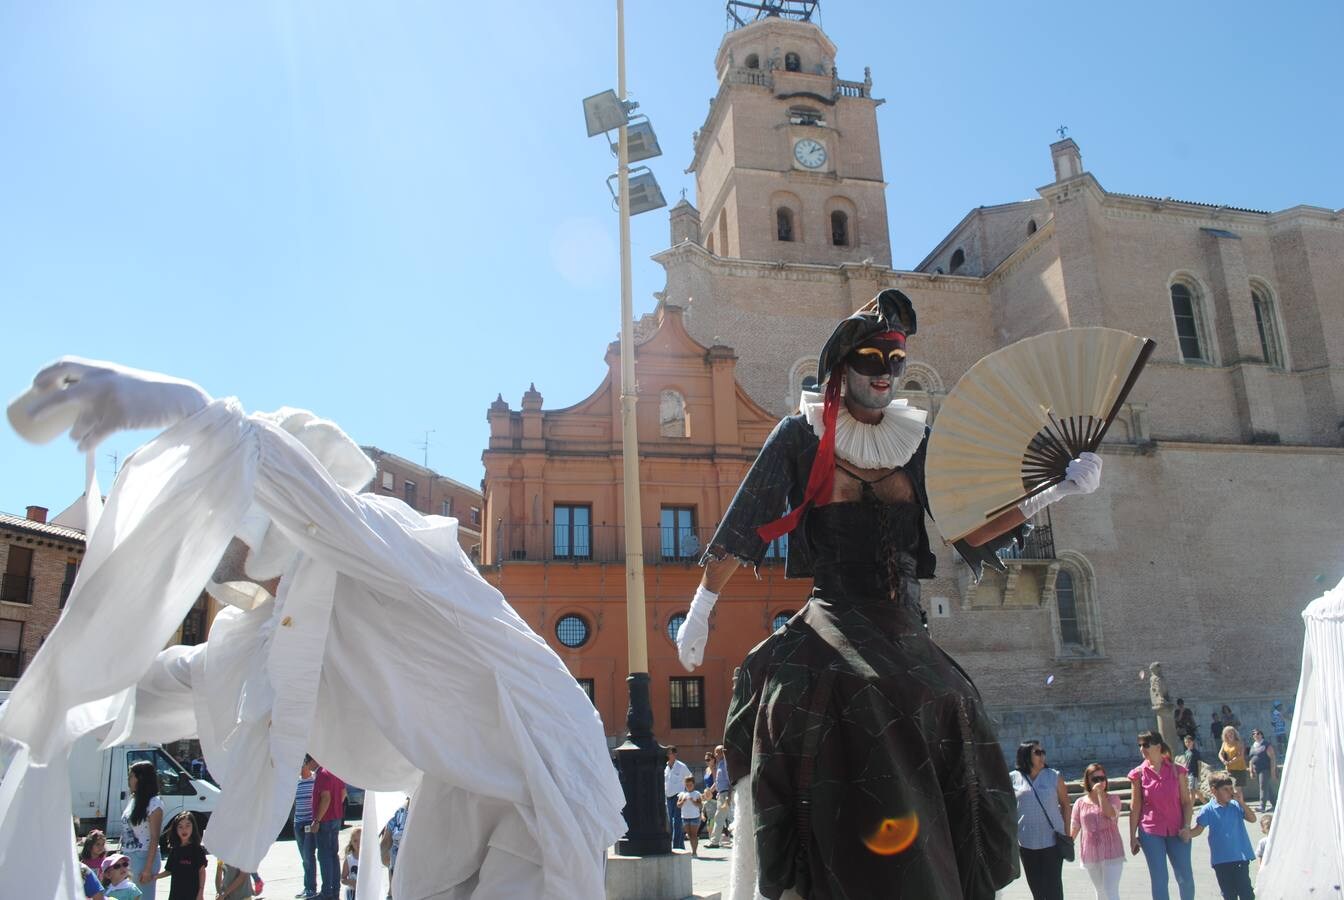 El público familiar disfrutó con la gran diva de falda gigante que recorrió las principales calles del casco histórico